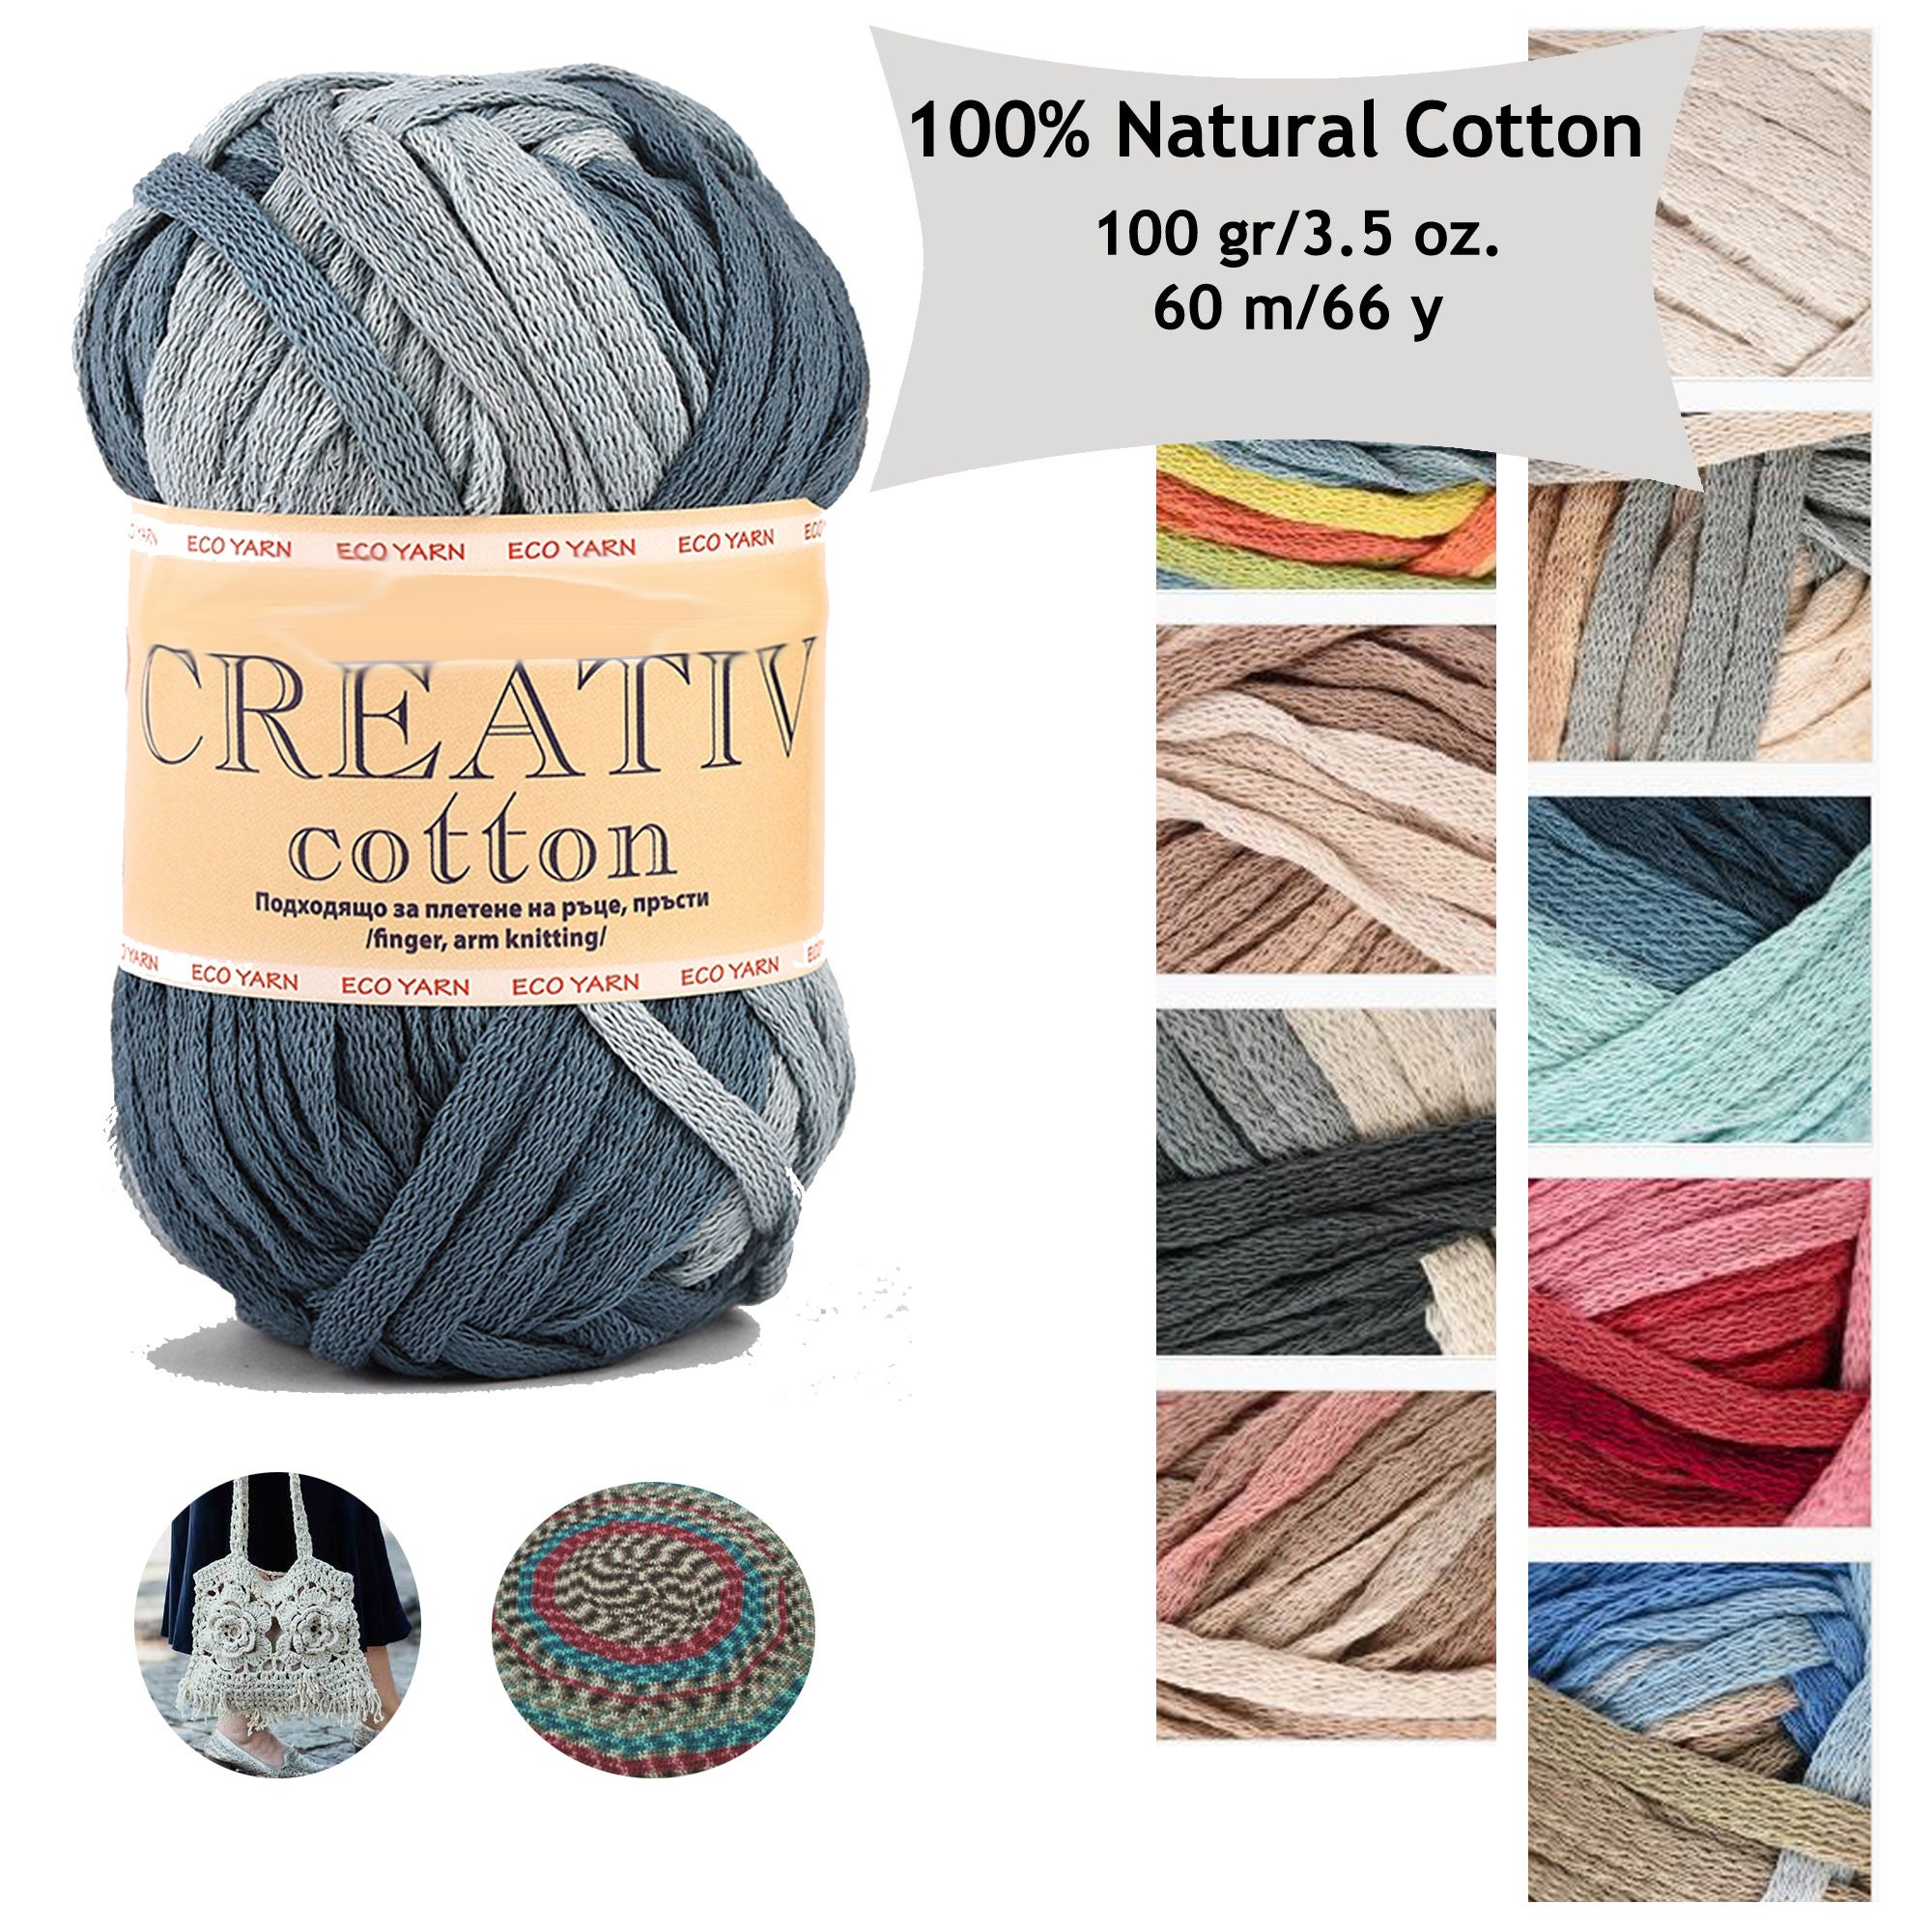 Crochet Tshirt Yarn, Hand-dyed Yarn for Basket, Multicolored Tshirt Yarn,  Jersey Knitted Yarn, Tyarn for Bag, 109 Yards Yarn 